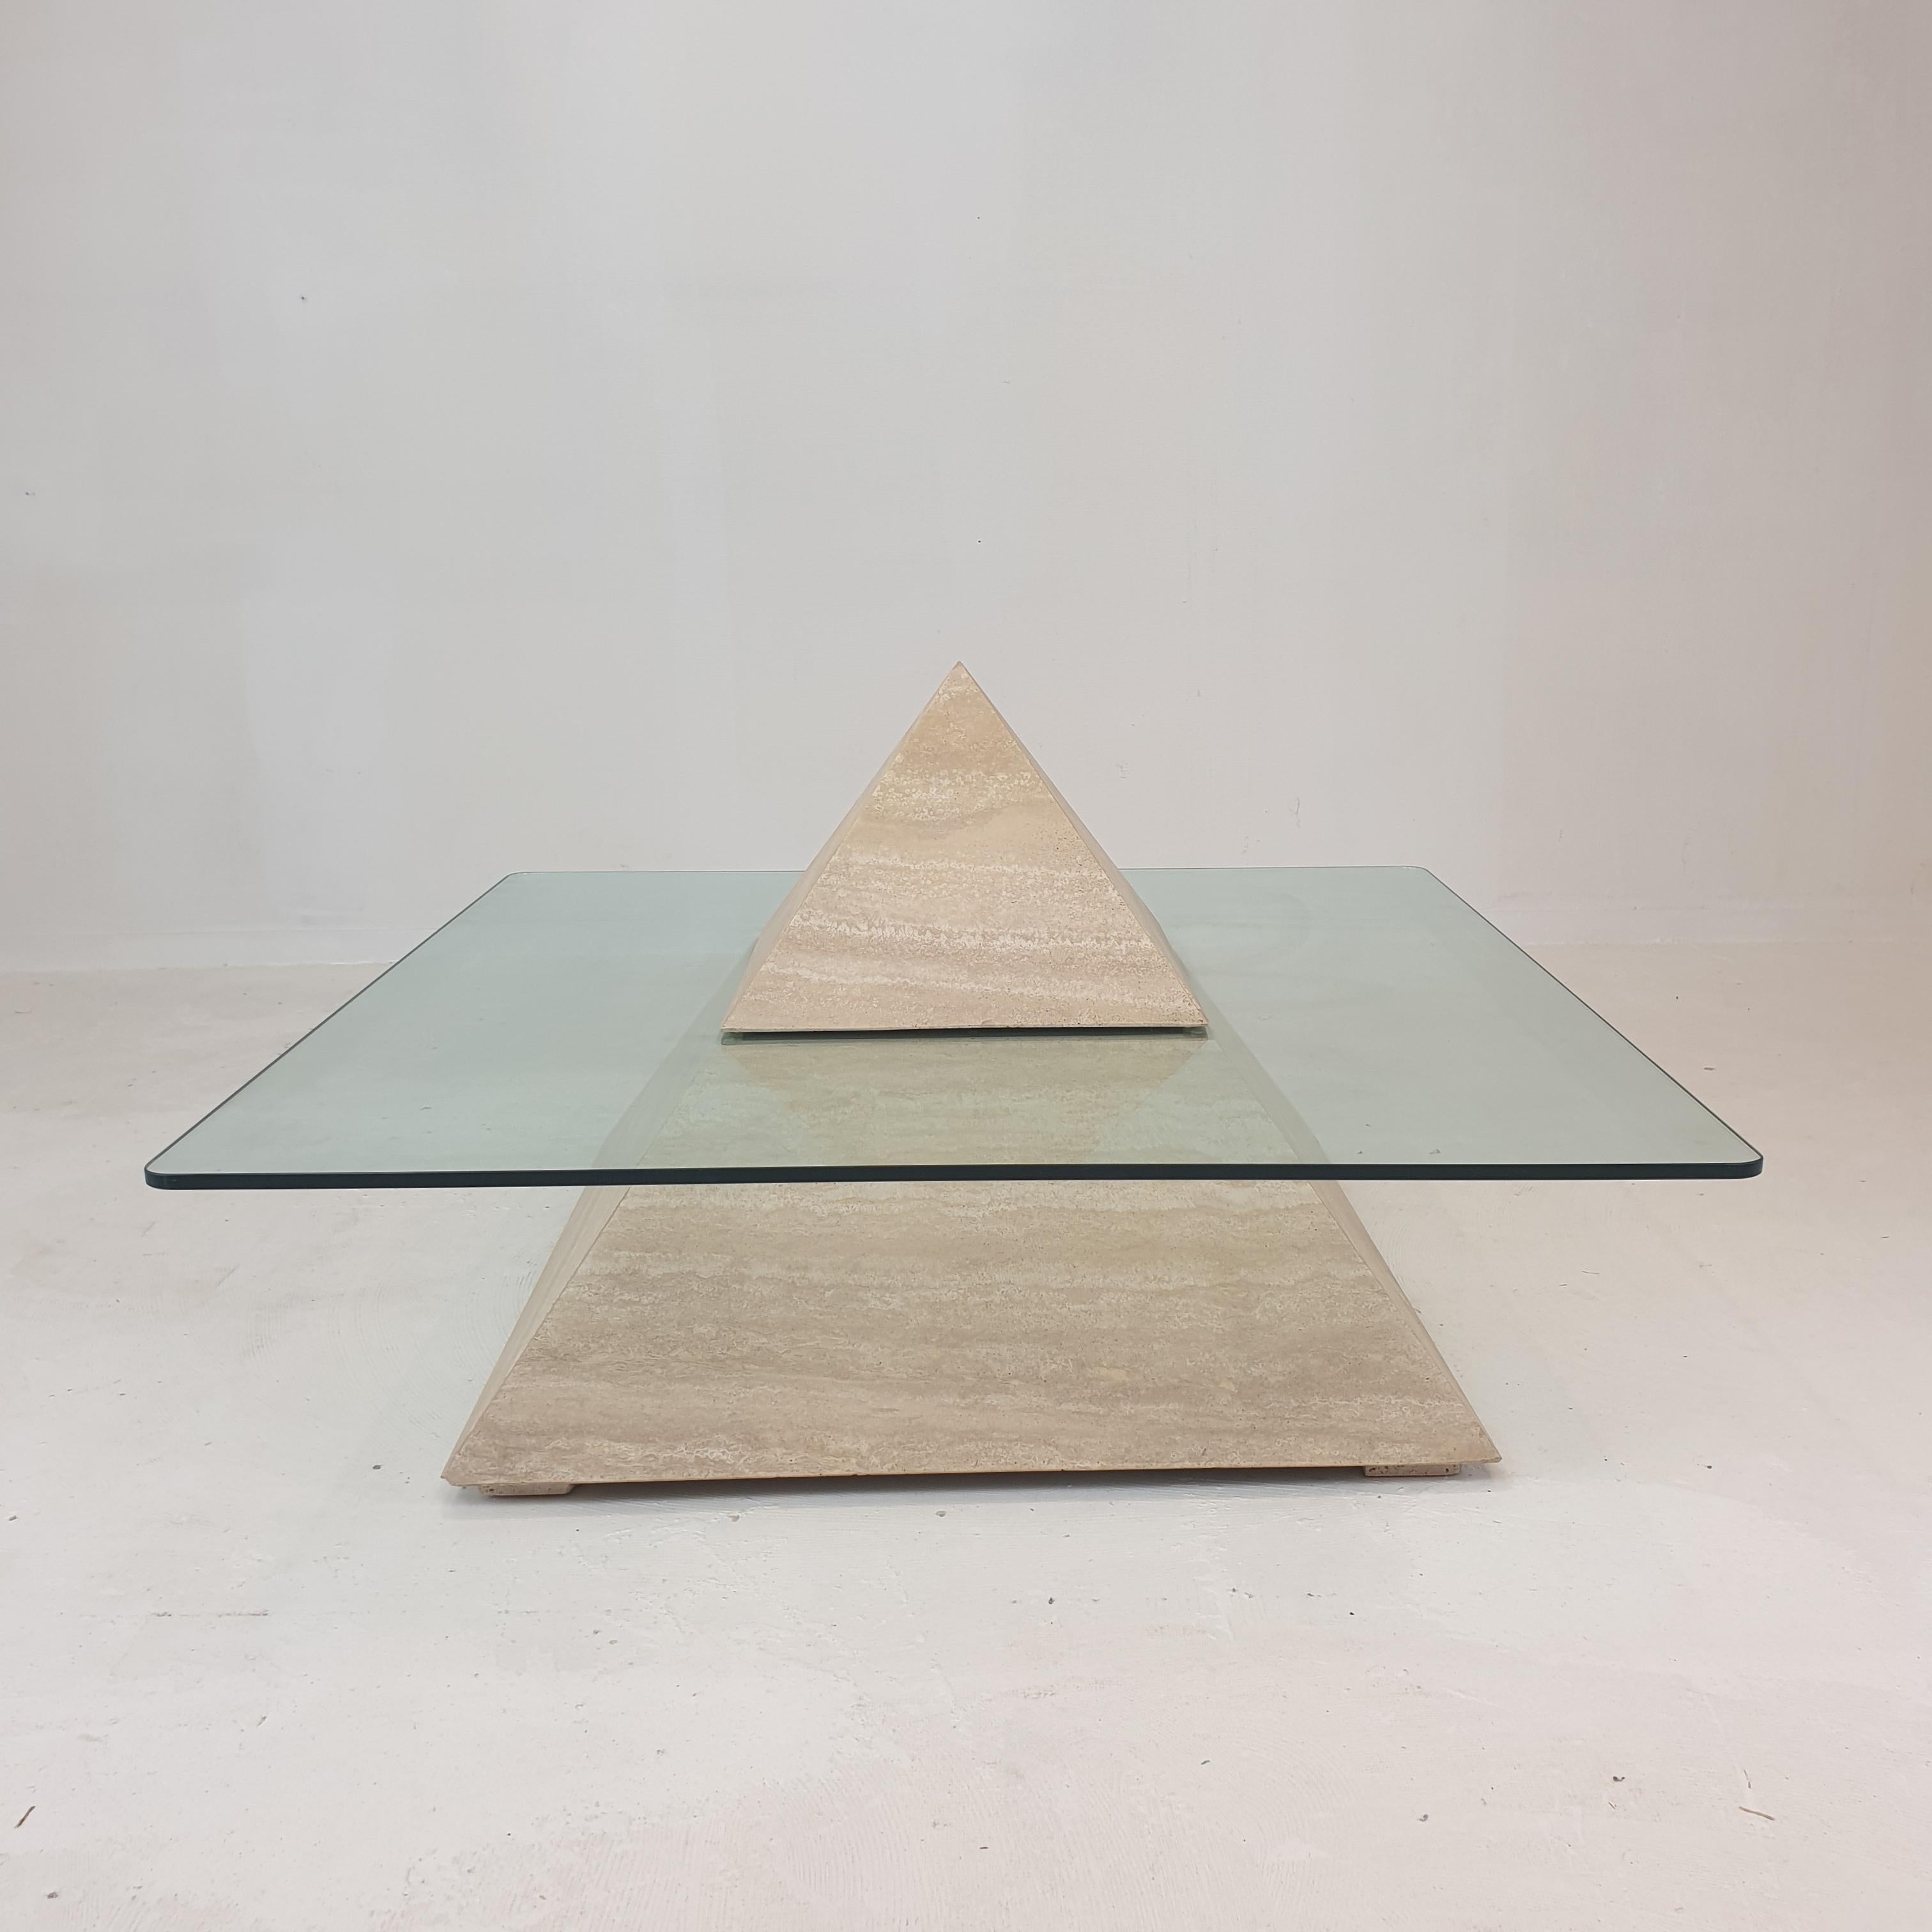 Très belle table basse italienne des années 80, fabriquée à la main en travertin. 

Cette belle pièce ressemble à une pyramide.
Il a une base et un sommet en travertin, la plaque de verre se trouve entre ces deux parties.

Mesures : La hauteur